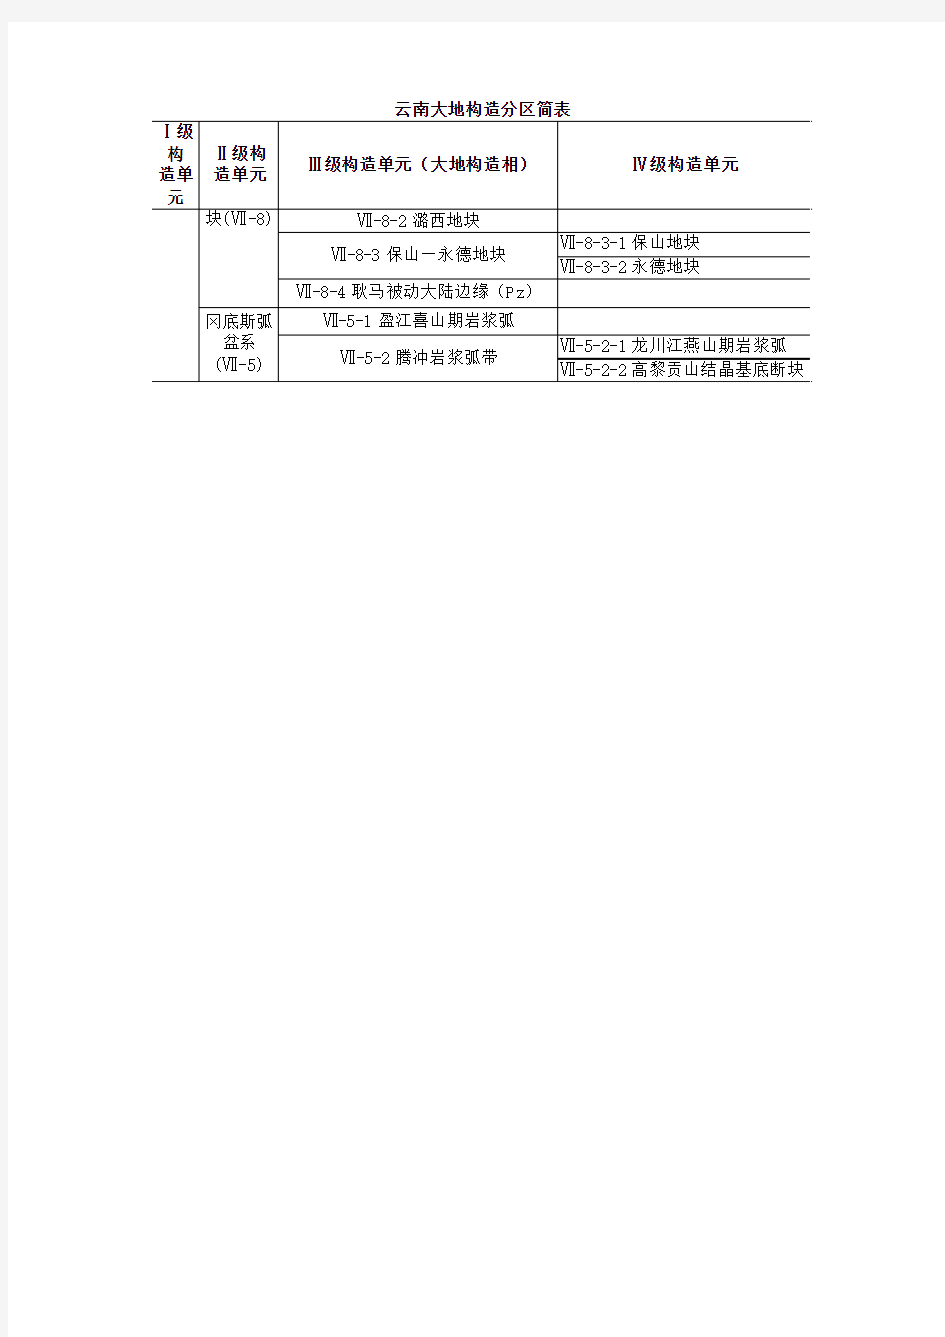 云南省大地构造单元划分简表